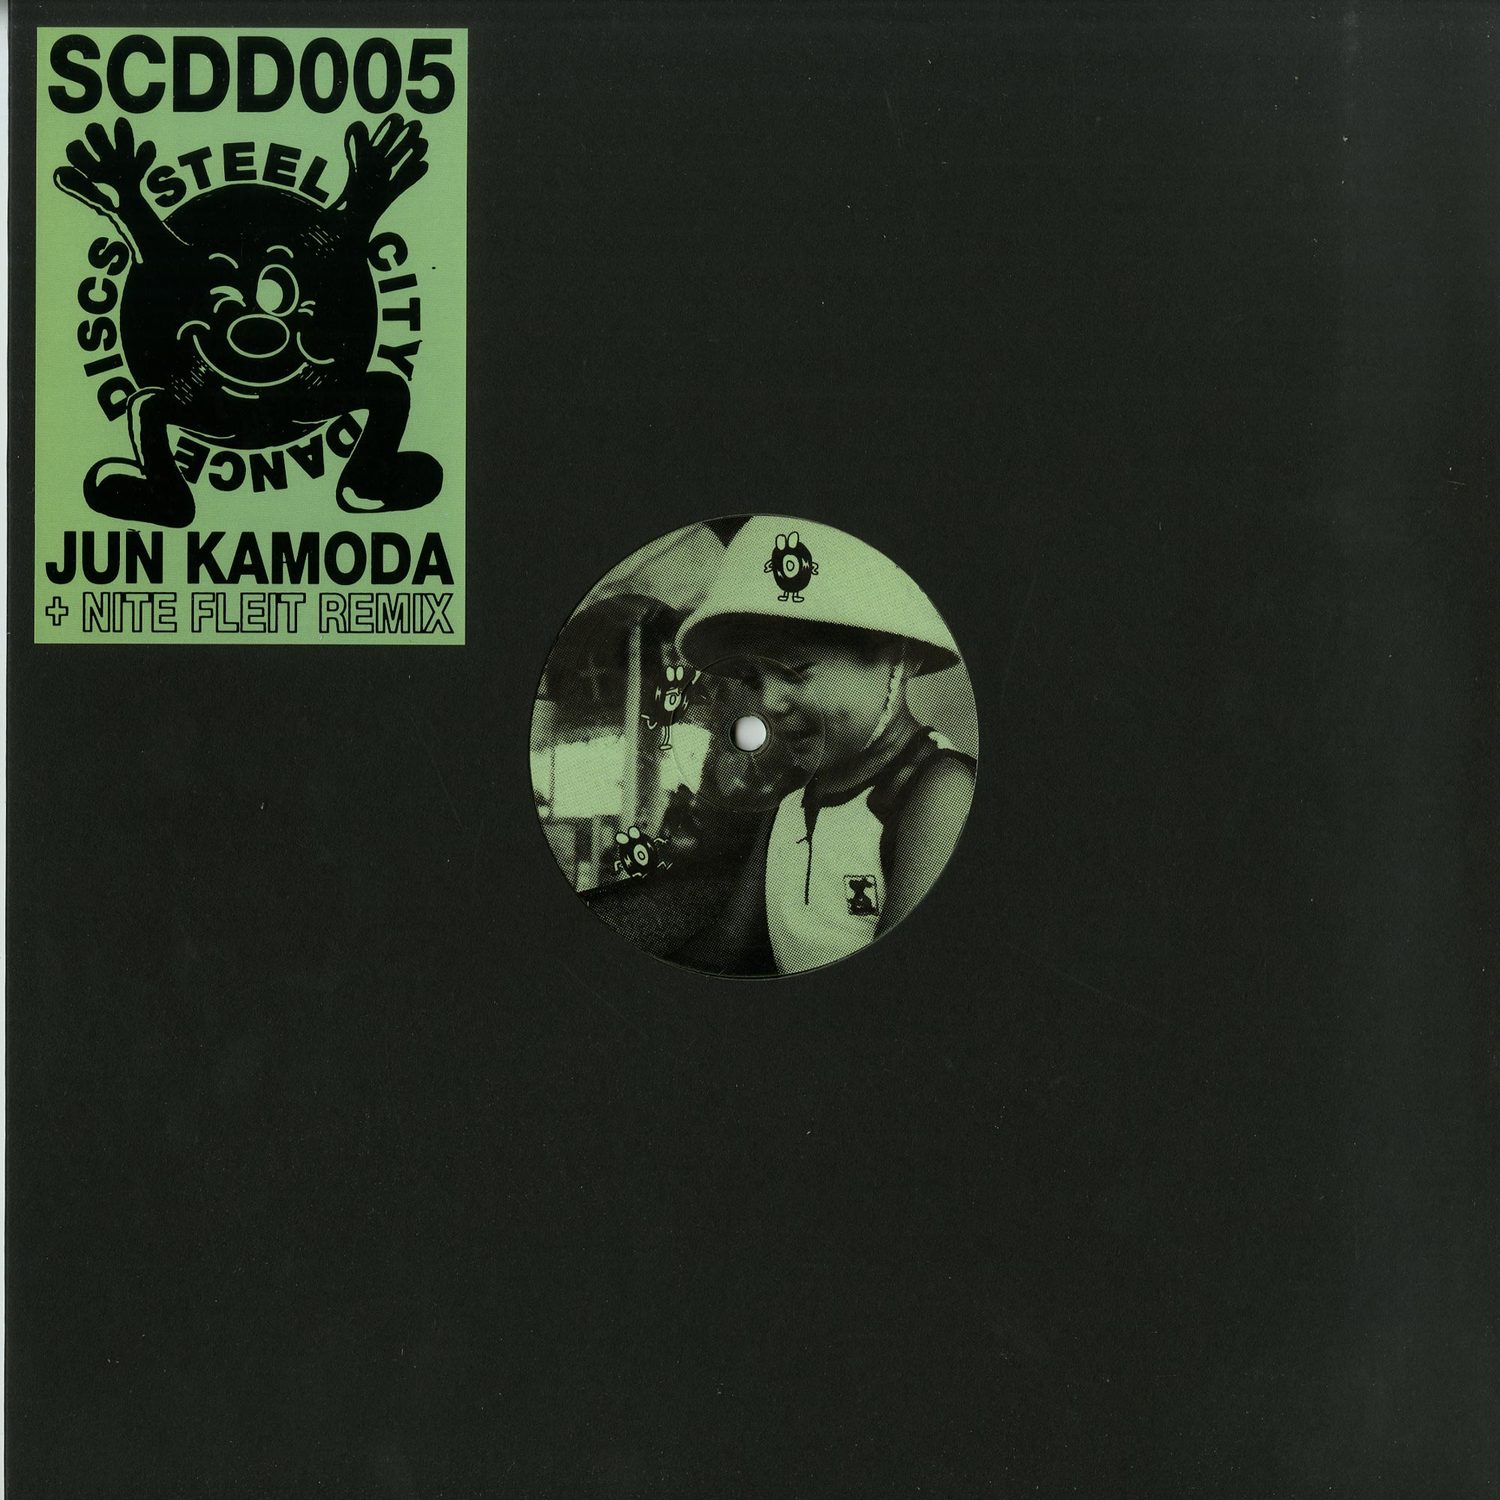 Jun Kamoda - MISTY FUNK EP